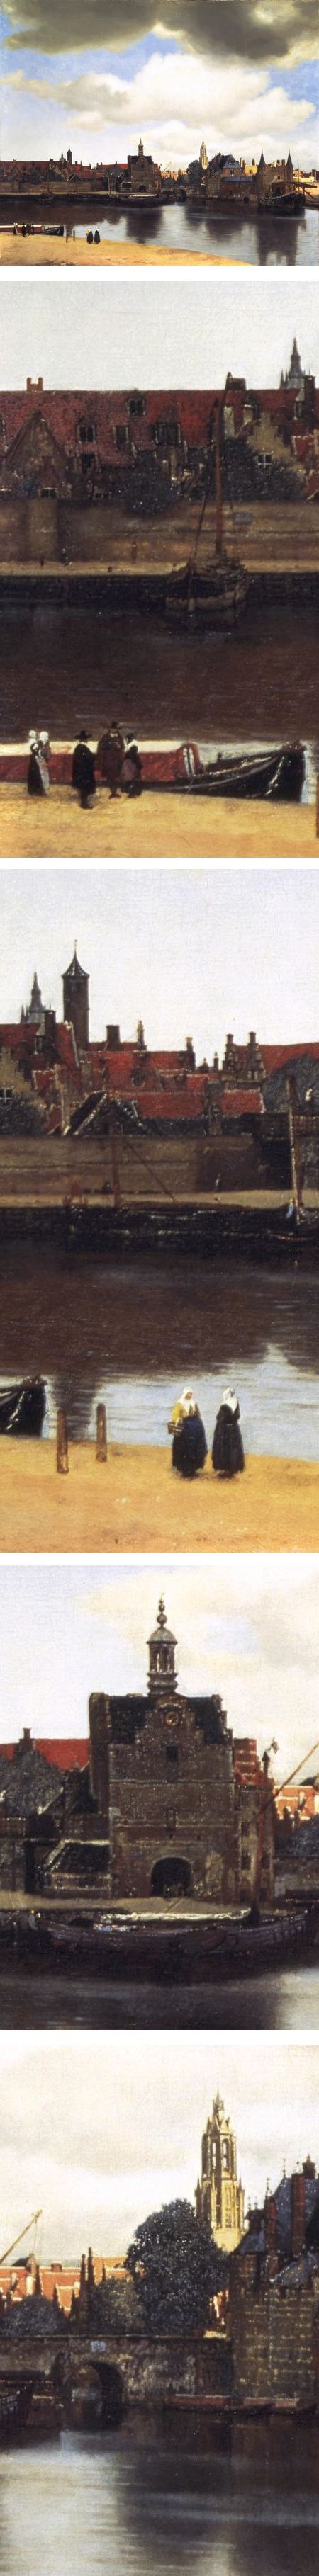 《代尔夫特的景色》--维米尔的三幅著的相关图片